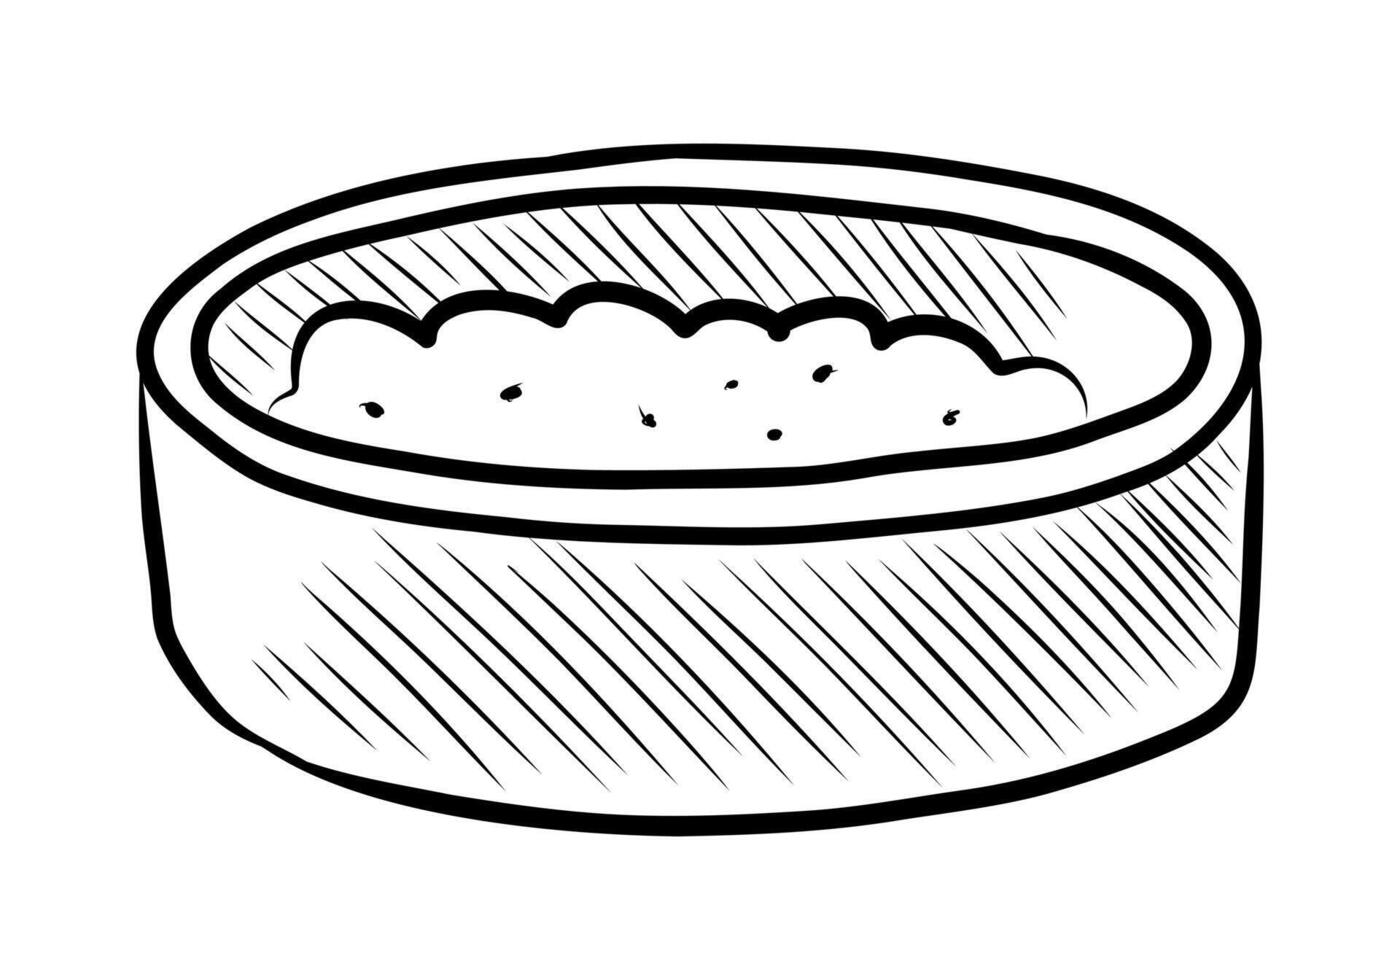 zwart en wit vector tekening van een kom van voedsel voor huisdieren